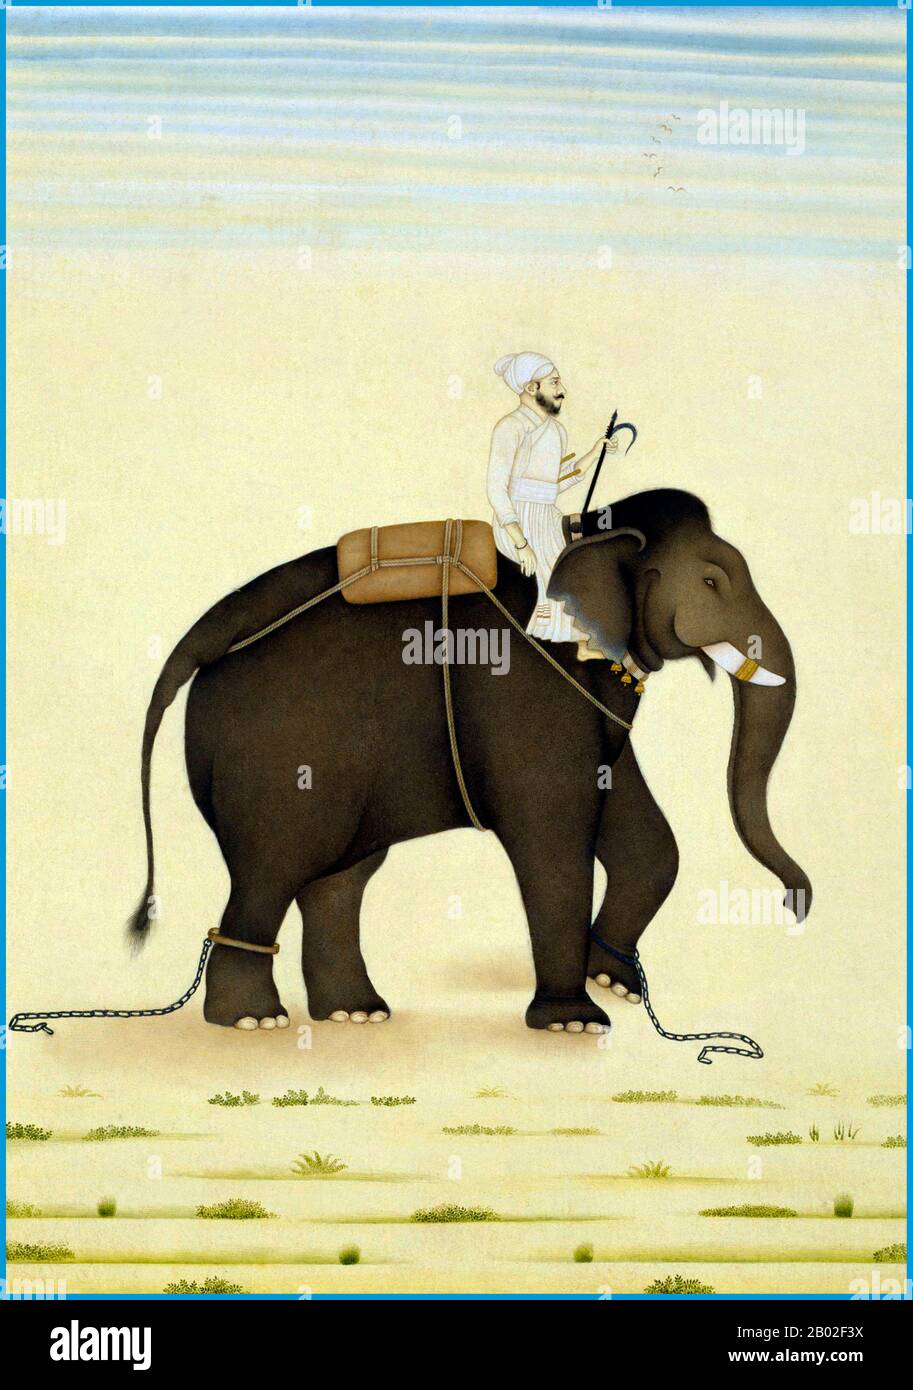 L'éléphant d'Inde (Elephas maximus indicus) est l'une des trois sous-espèces reconnues de l'éléphant d'Asie, et est originaire de l'Asie continentale. En général, les éléphants d'Asie sont plus petits que les éléphants d'Afrique et ont le plus haut point corporel sur la tête. La pointe de leur tronc a un processus de type doigt. Leur dos est convexe ou de niveau. Les éléphants indiens atteignent une hauteur d'épaule comprise entre 2 et 3,5 m (6,6 et 11,5 pi), pèsent entre 2 000 et 5 000 kg (4 400 et 11 000 lb) et ont 19 paires de côtes. Leur couleur de peau est plus claire que celle des maxima avec des taches plus petites de dépigmentation, mais plus sombre que de somme Banque D'Images